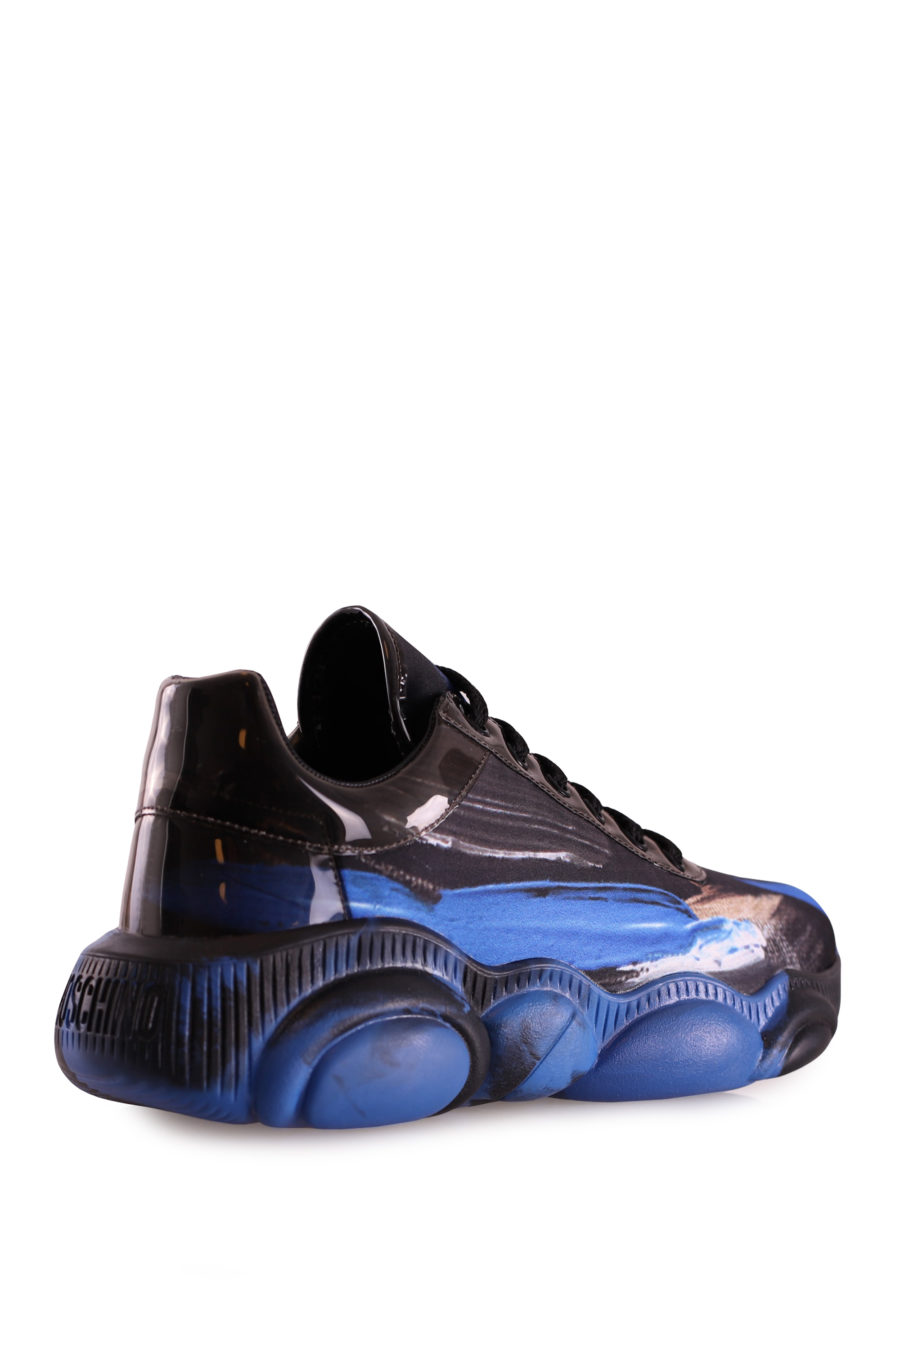 Zapatillas negras con efecto pintura azul - 66866b760cf972c808665e59be76faa1b8cdecf2